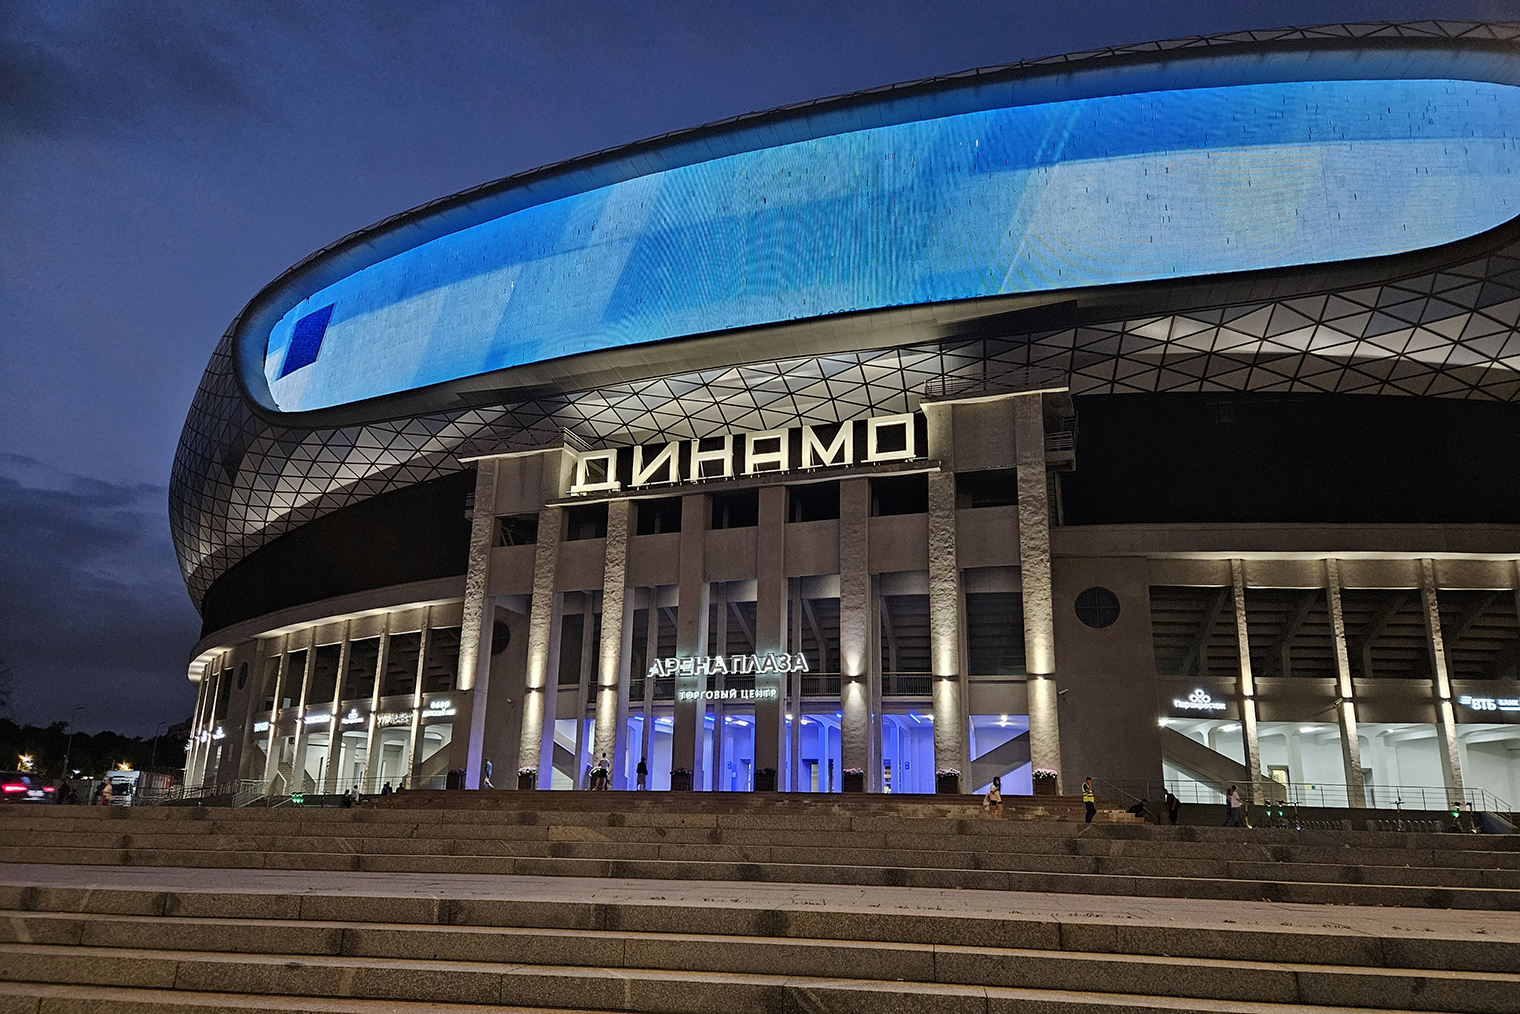 Фото стадиона «Динамо» на Galaxy Z Fold 5 смотрится неплохо, но зернистые шумы в тенях и пересвеченные белые вывески портят впечатление. Зато синее освещение на входе передано точно